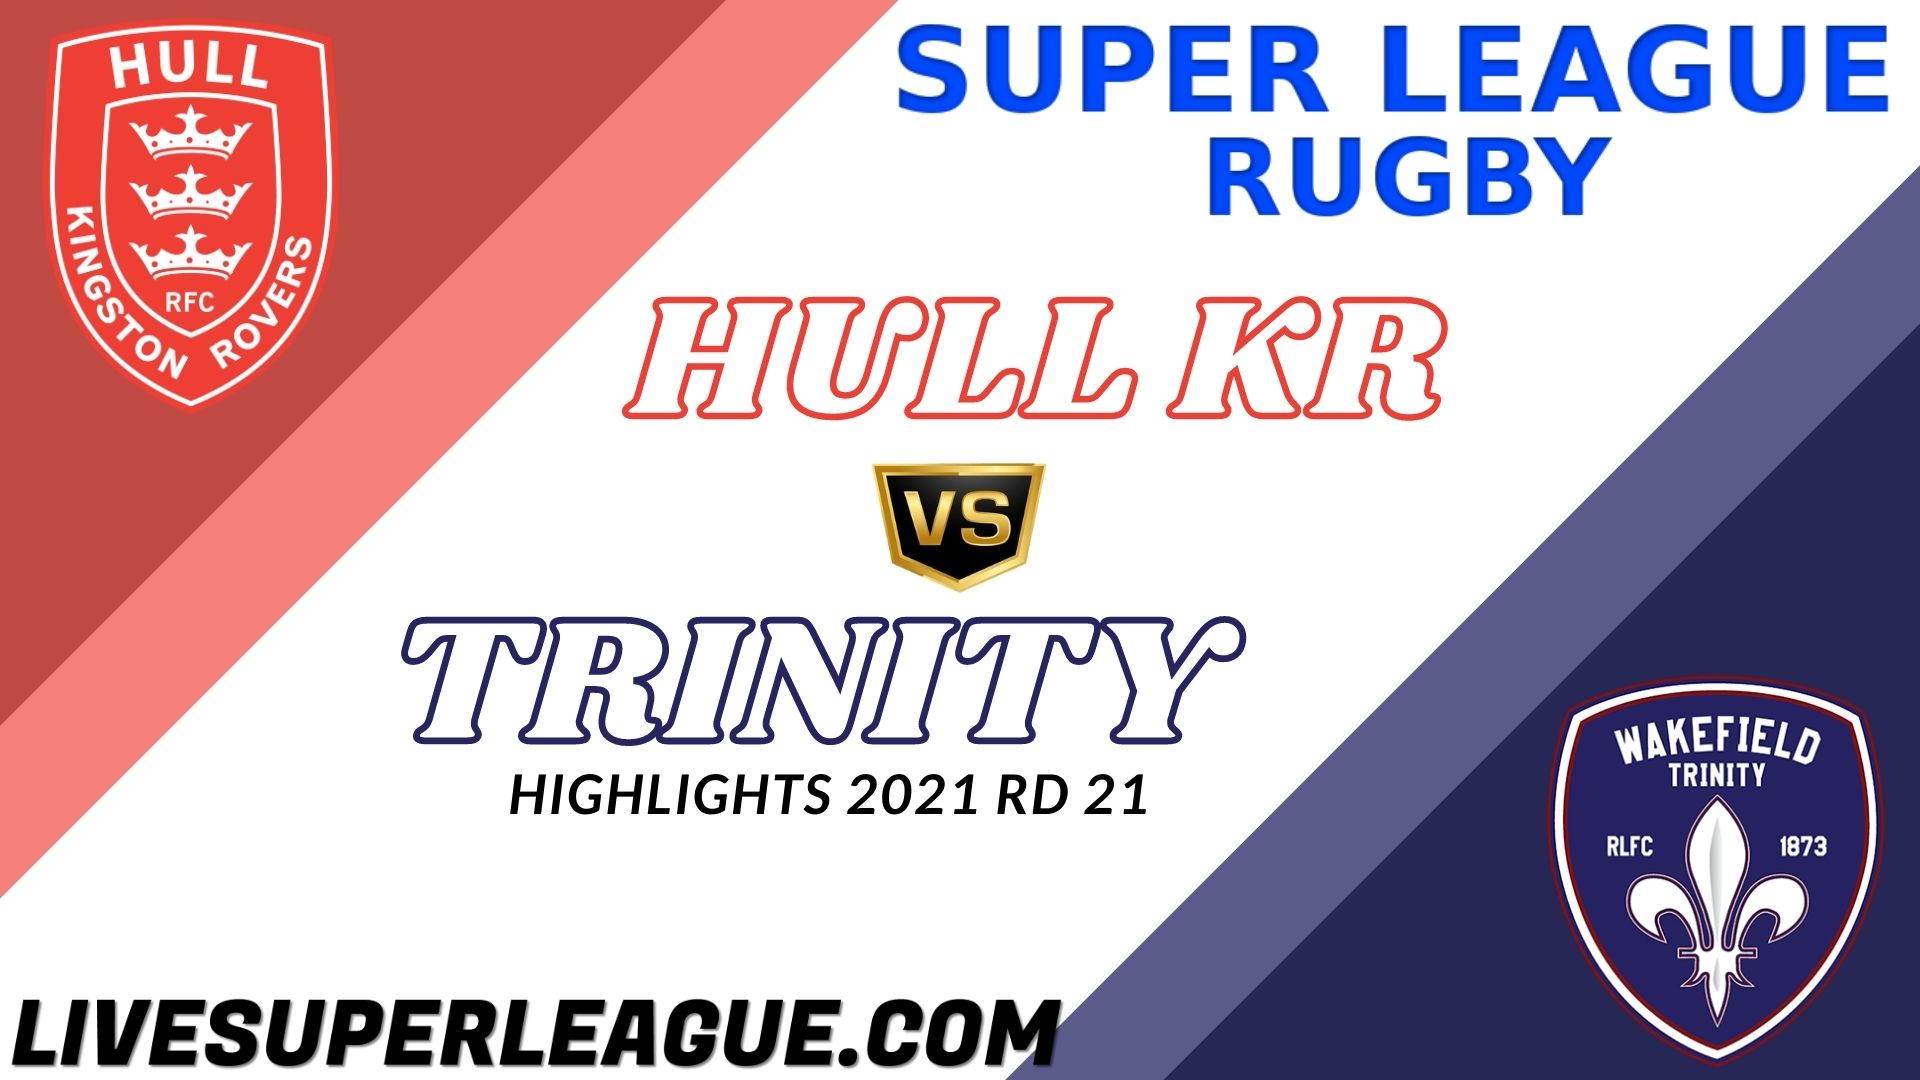 Hull KR Vs Wakefield Trinity Highlights 2021